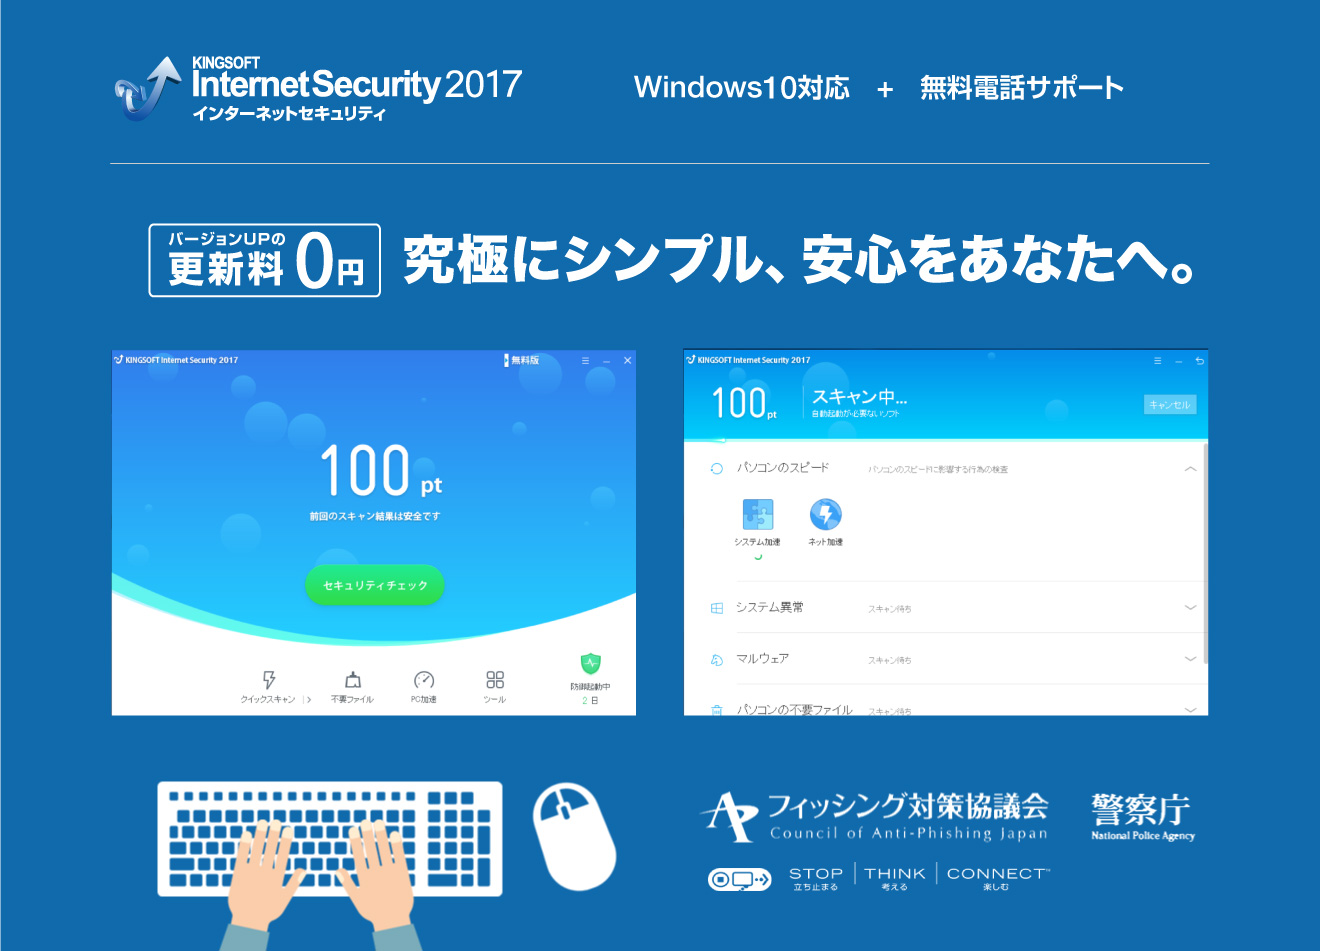 キングソフト、総合セキュリティソフト「KINGSOFT Internet Security 2017」を公開　～究極にシンプル、安心をあなたへ。～